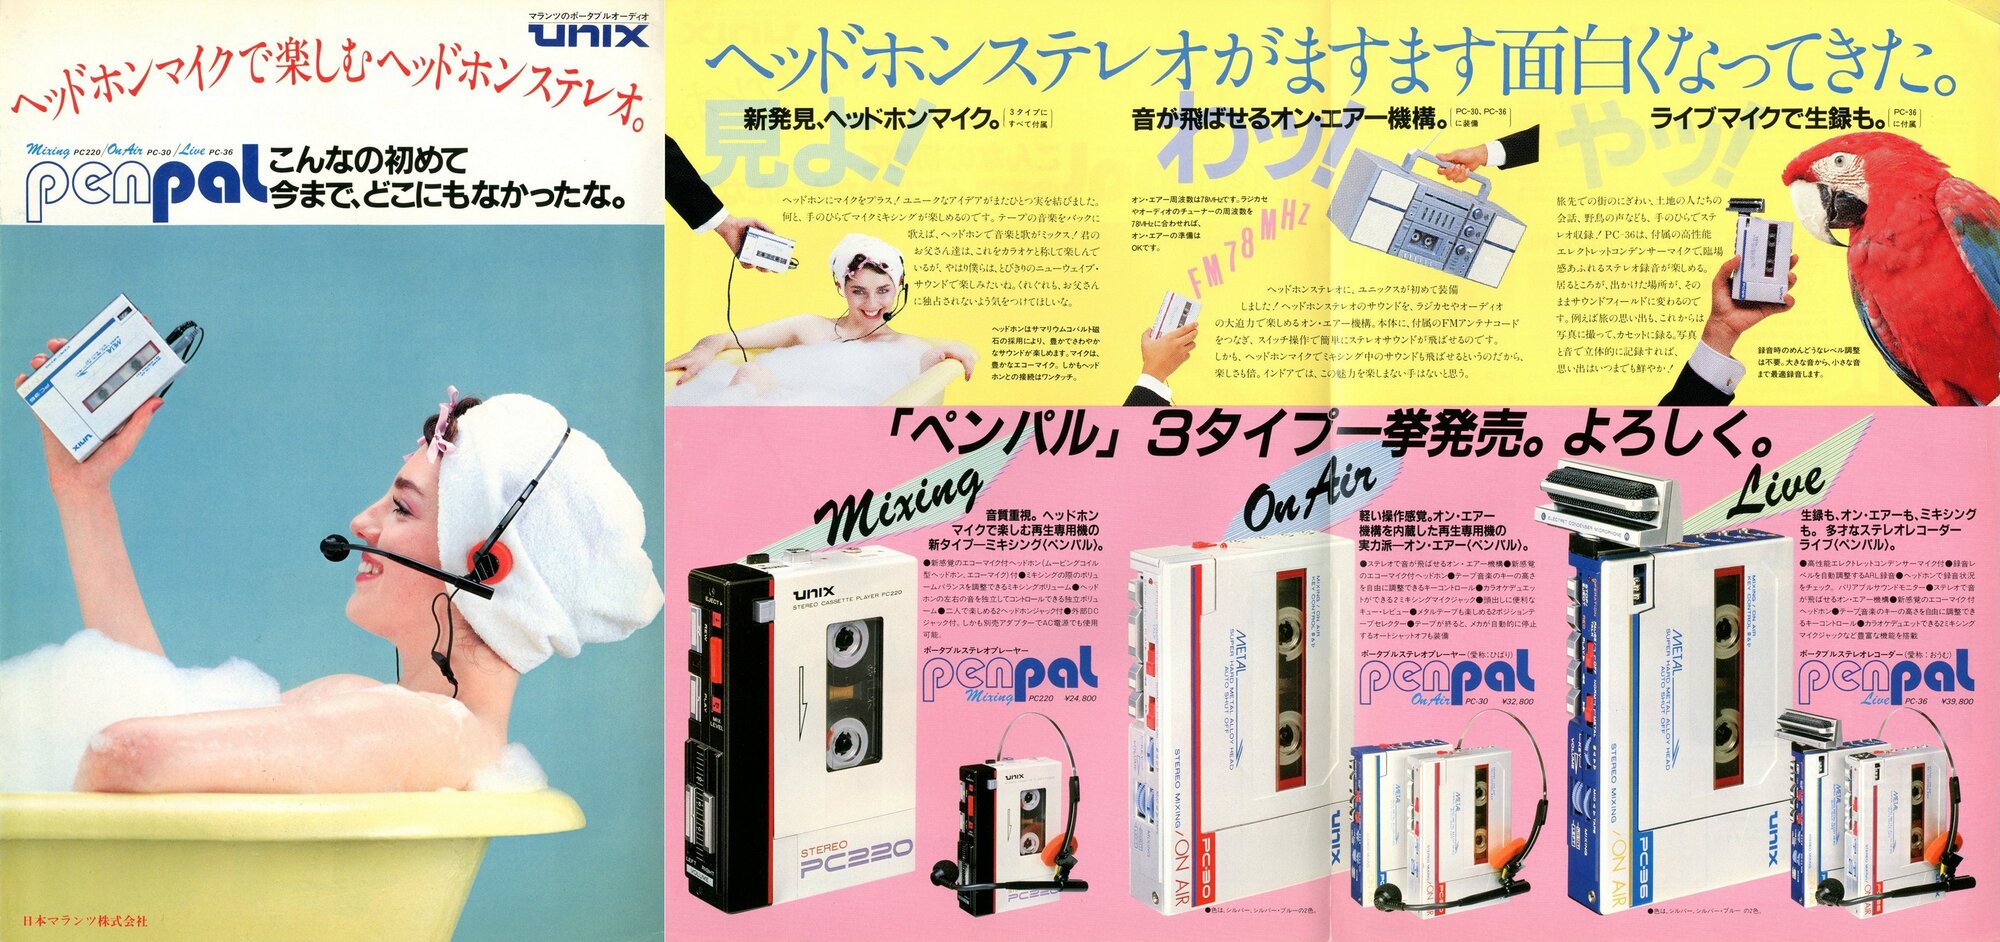 Unix PenPal 1981.jpg